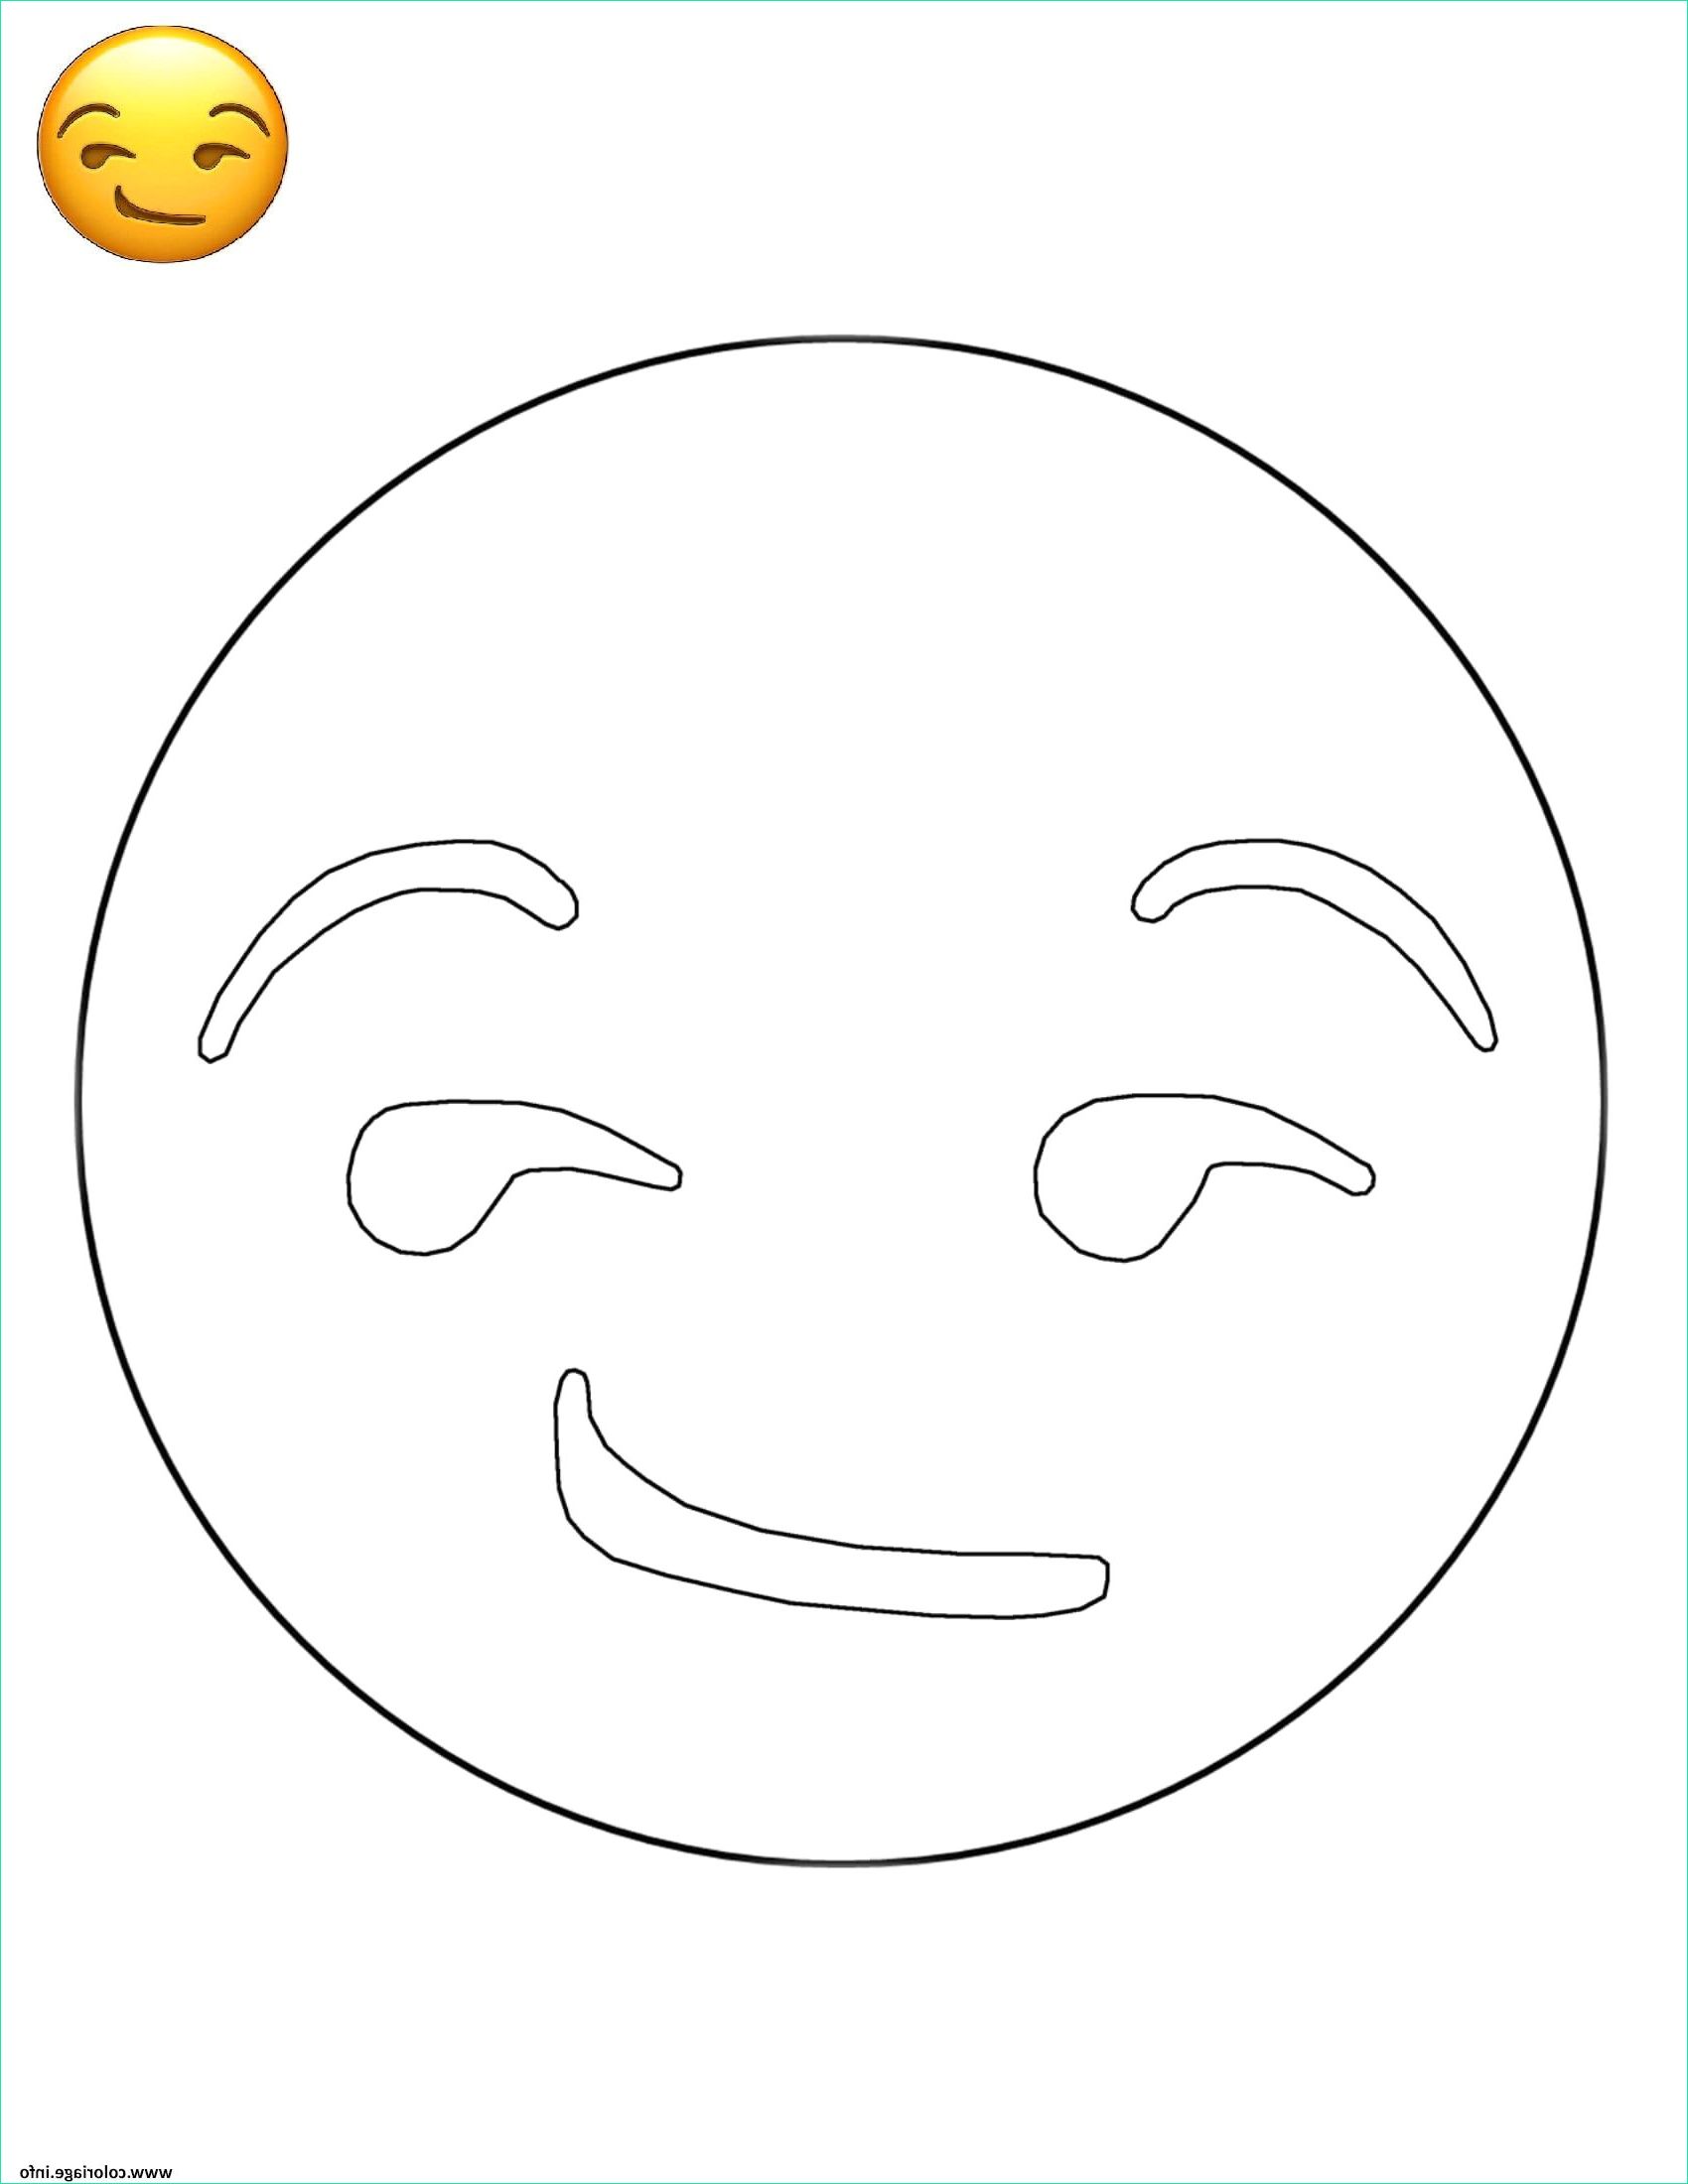 coloriage emoji iphone a imprimer coloriage emoji smirk smiley jecolorie